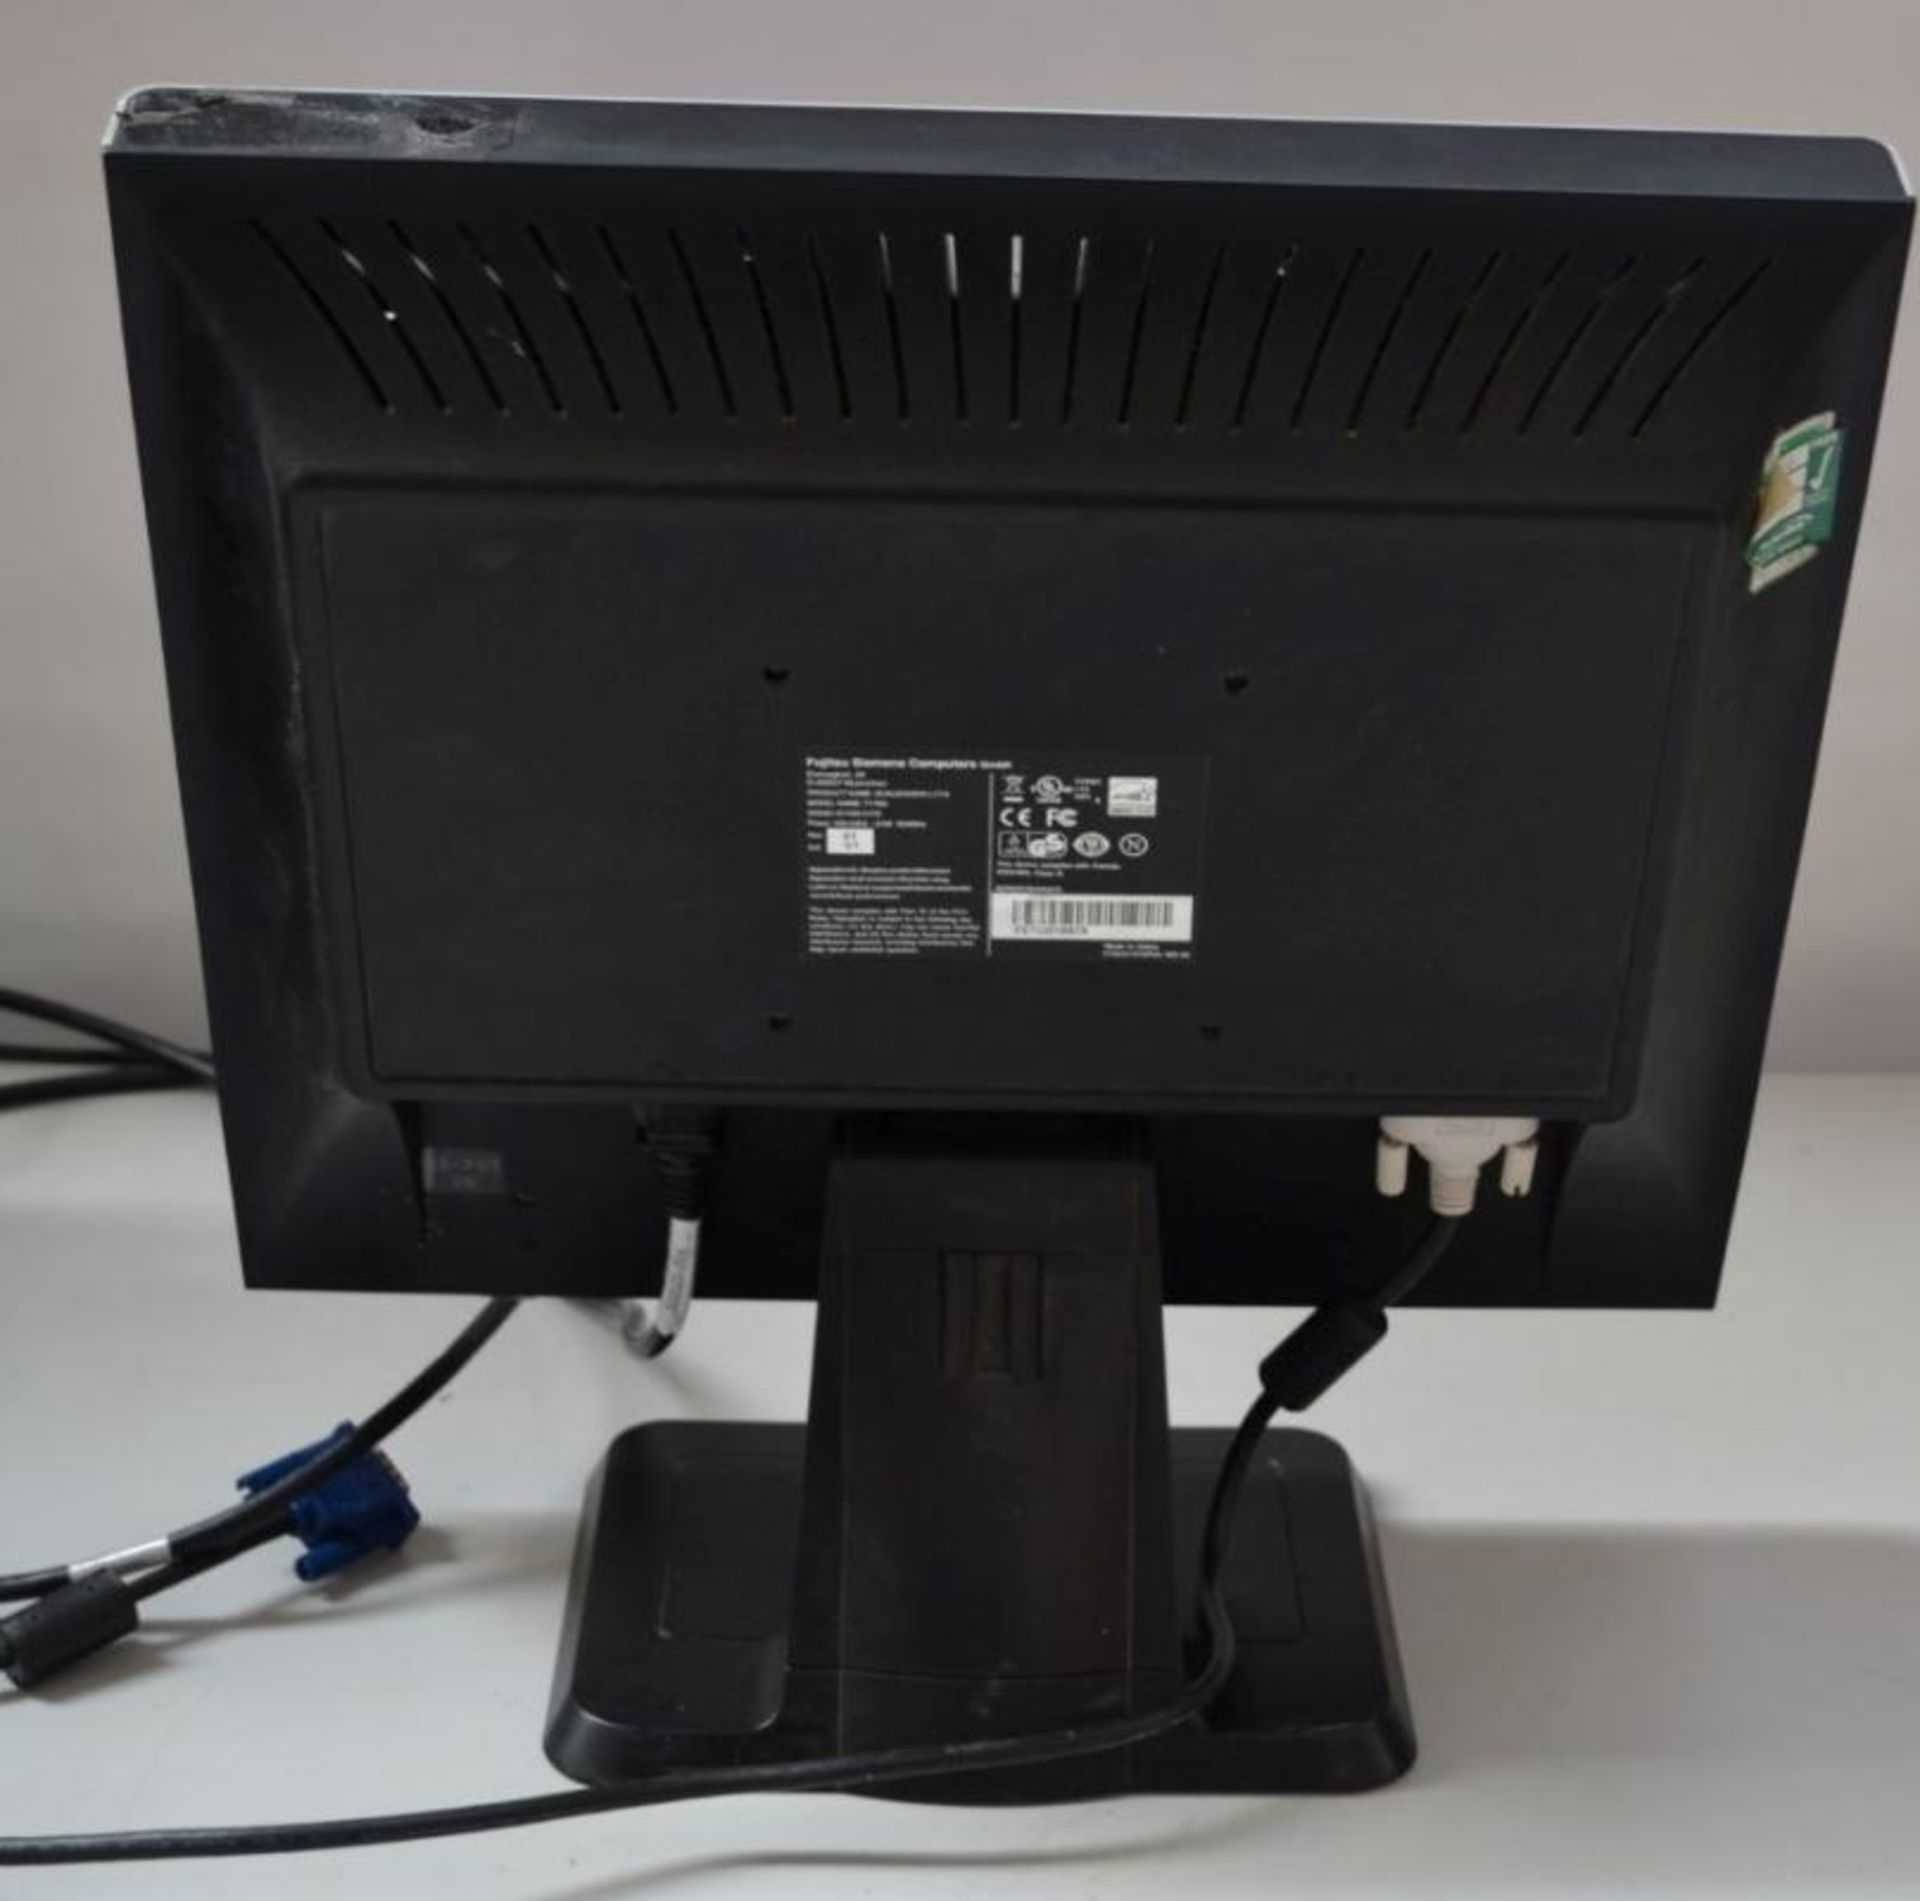 1 x Fujitsu Siemens T17BA 17"LCD PC Monitor - Ref J2265 - CL394 - Location: Altrincham WA14 - HKPal3 - Bild 3 aus 3